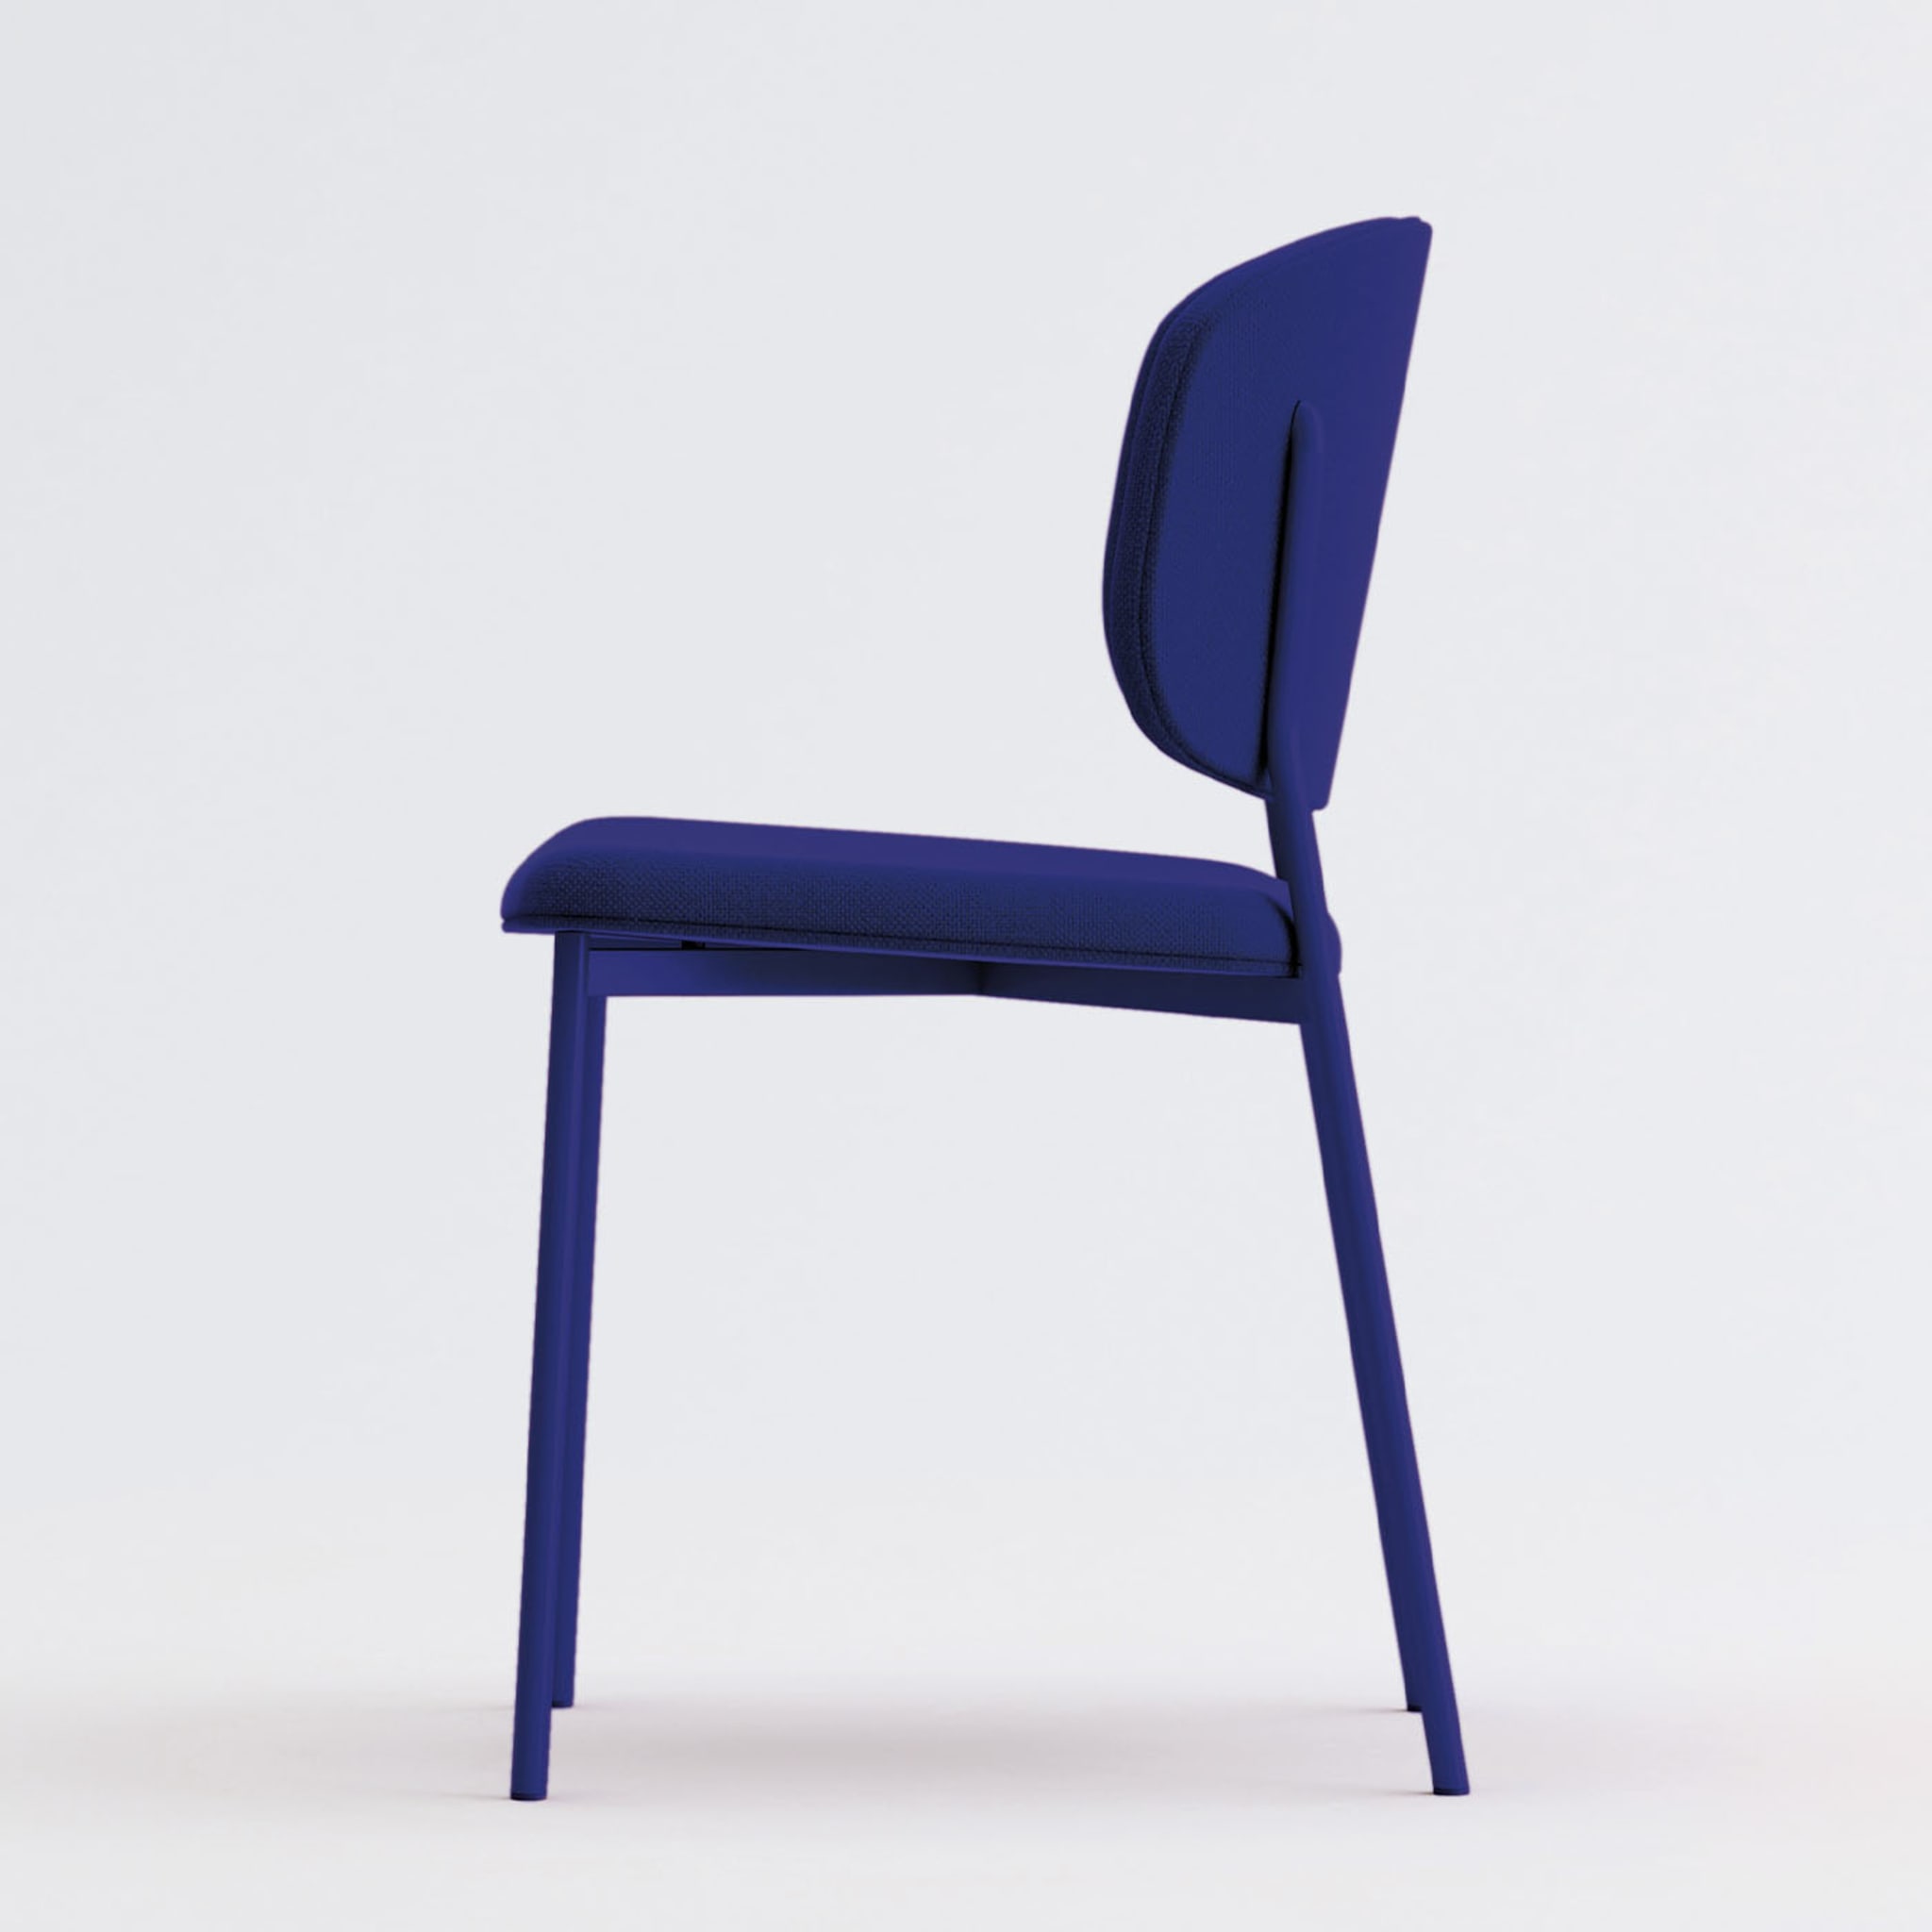 Wround Blauer Stuhl von Copiosa Lab - Alternative Ansicht 1